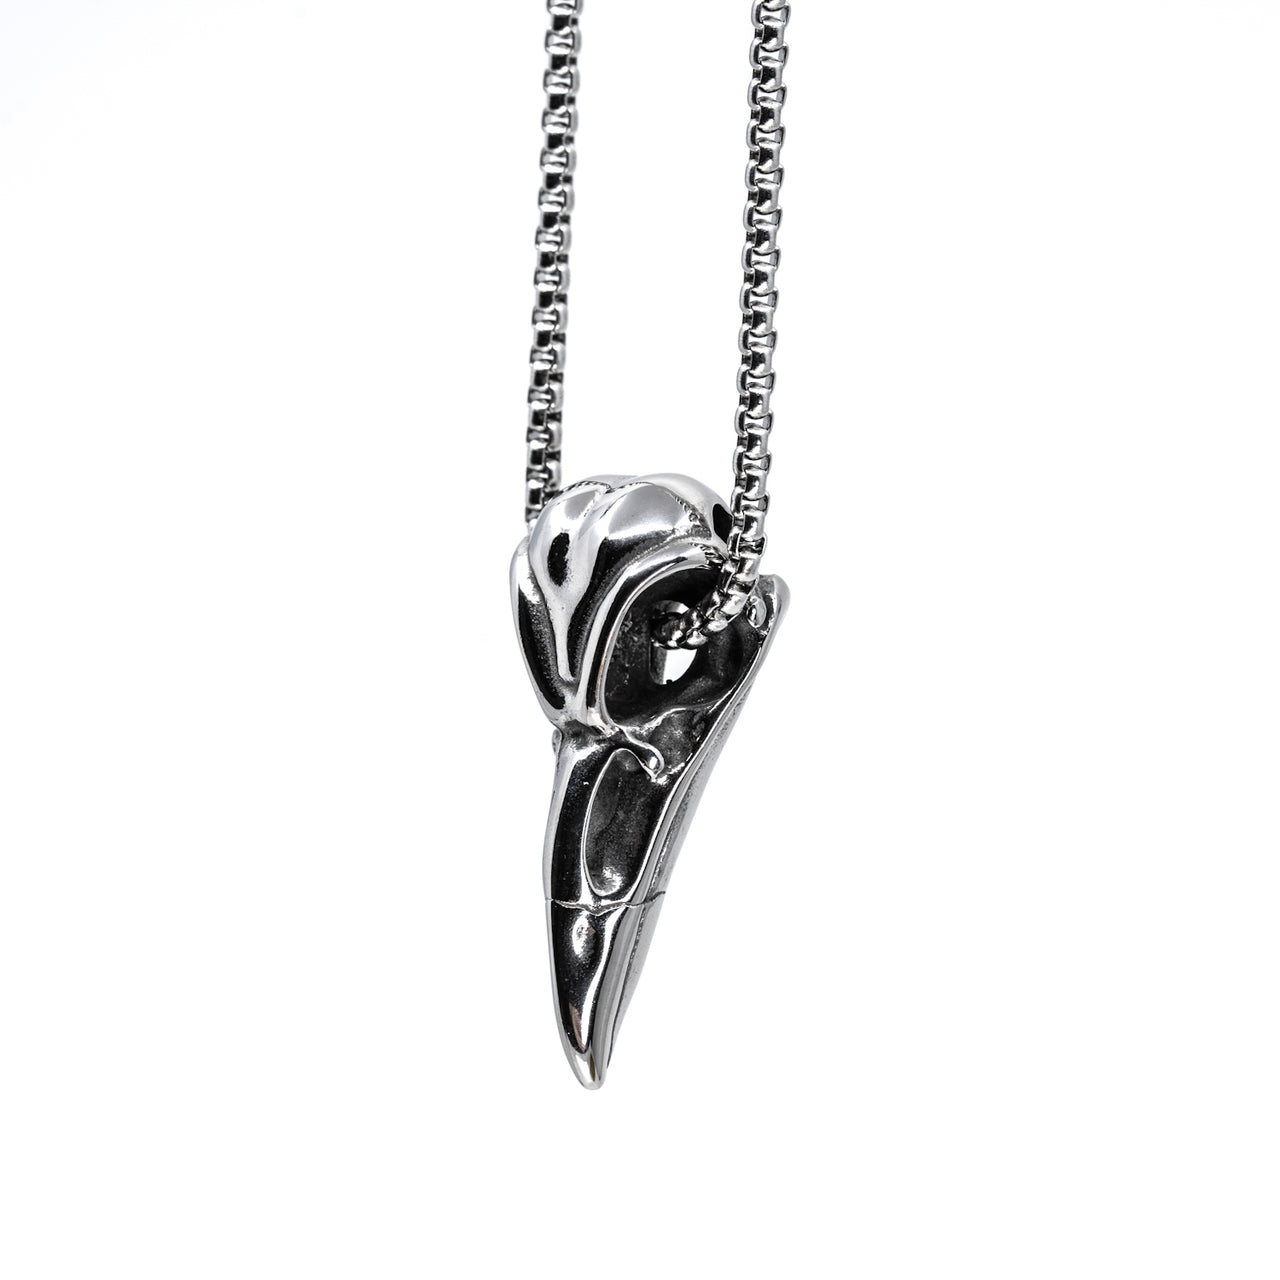 Stainless Steel Raven Skull Pendant - Black Feather Design